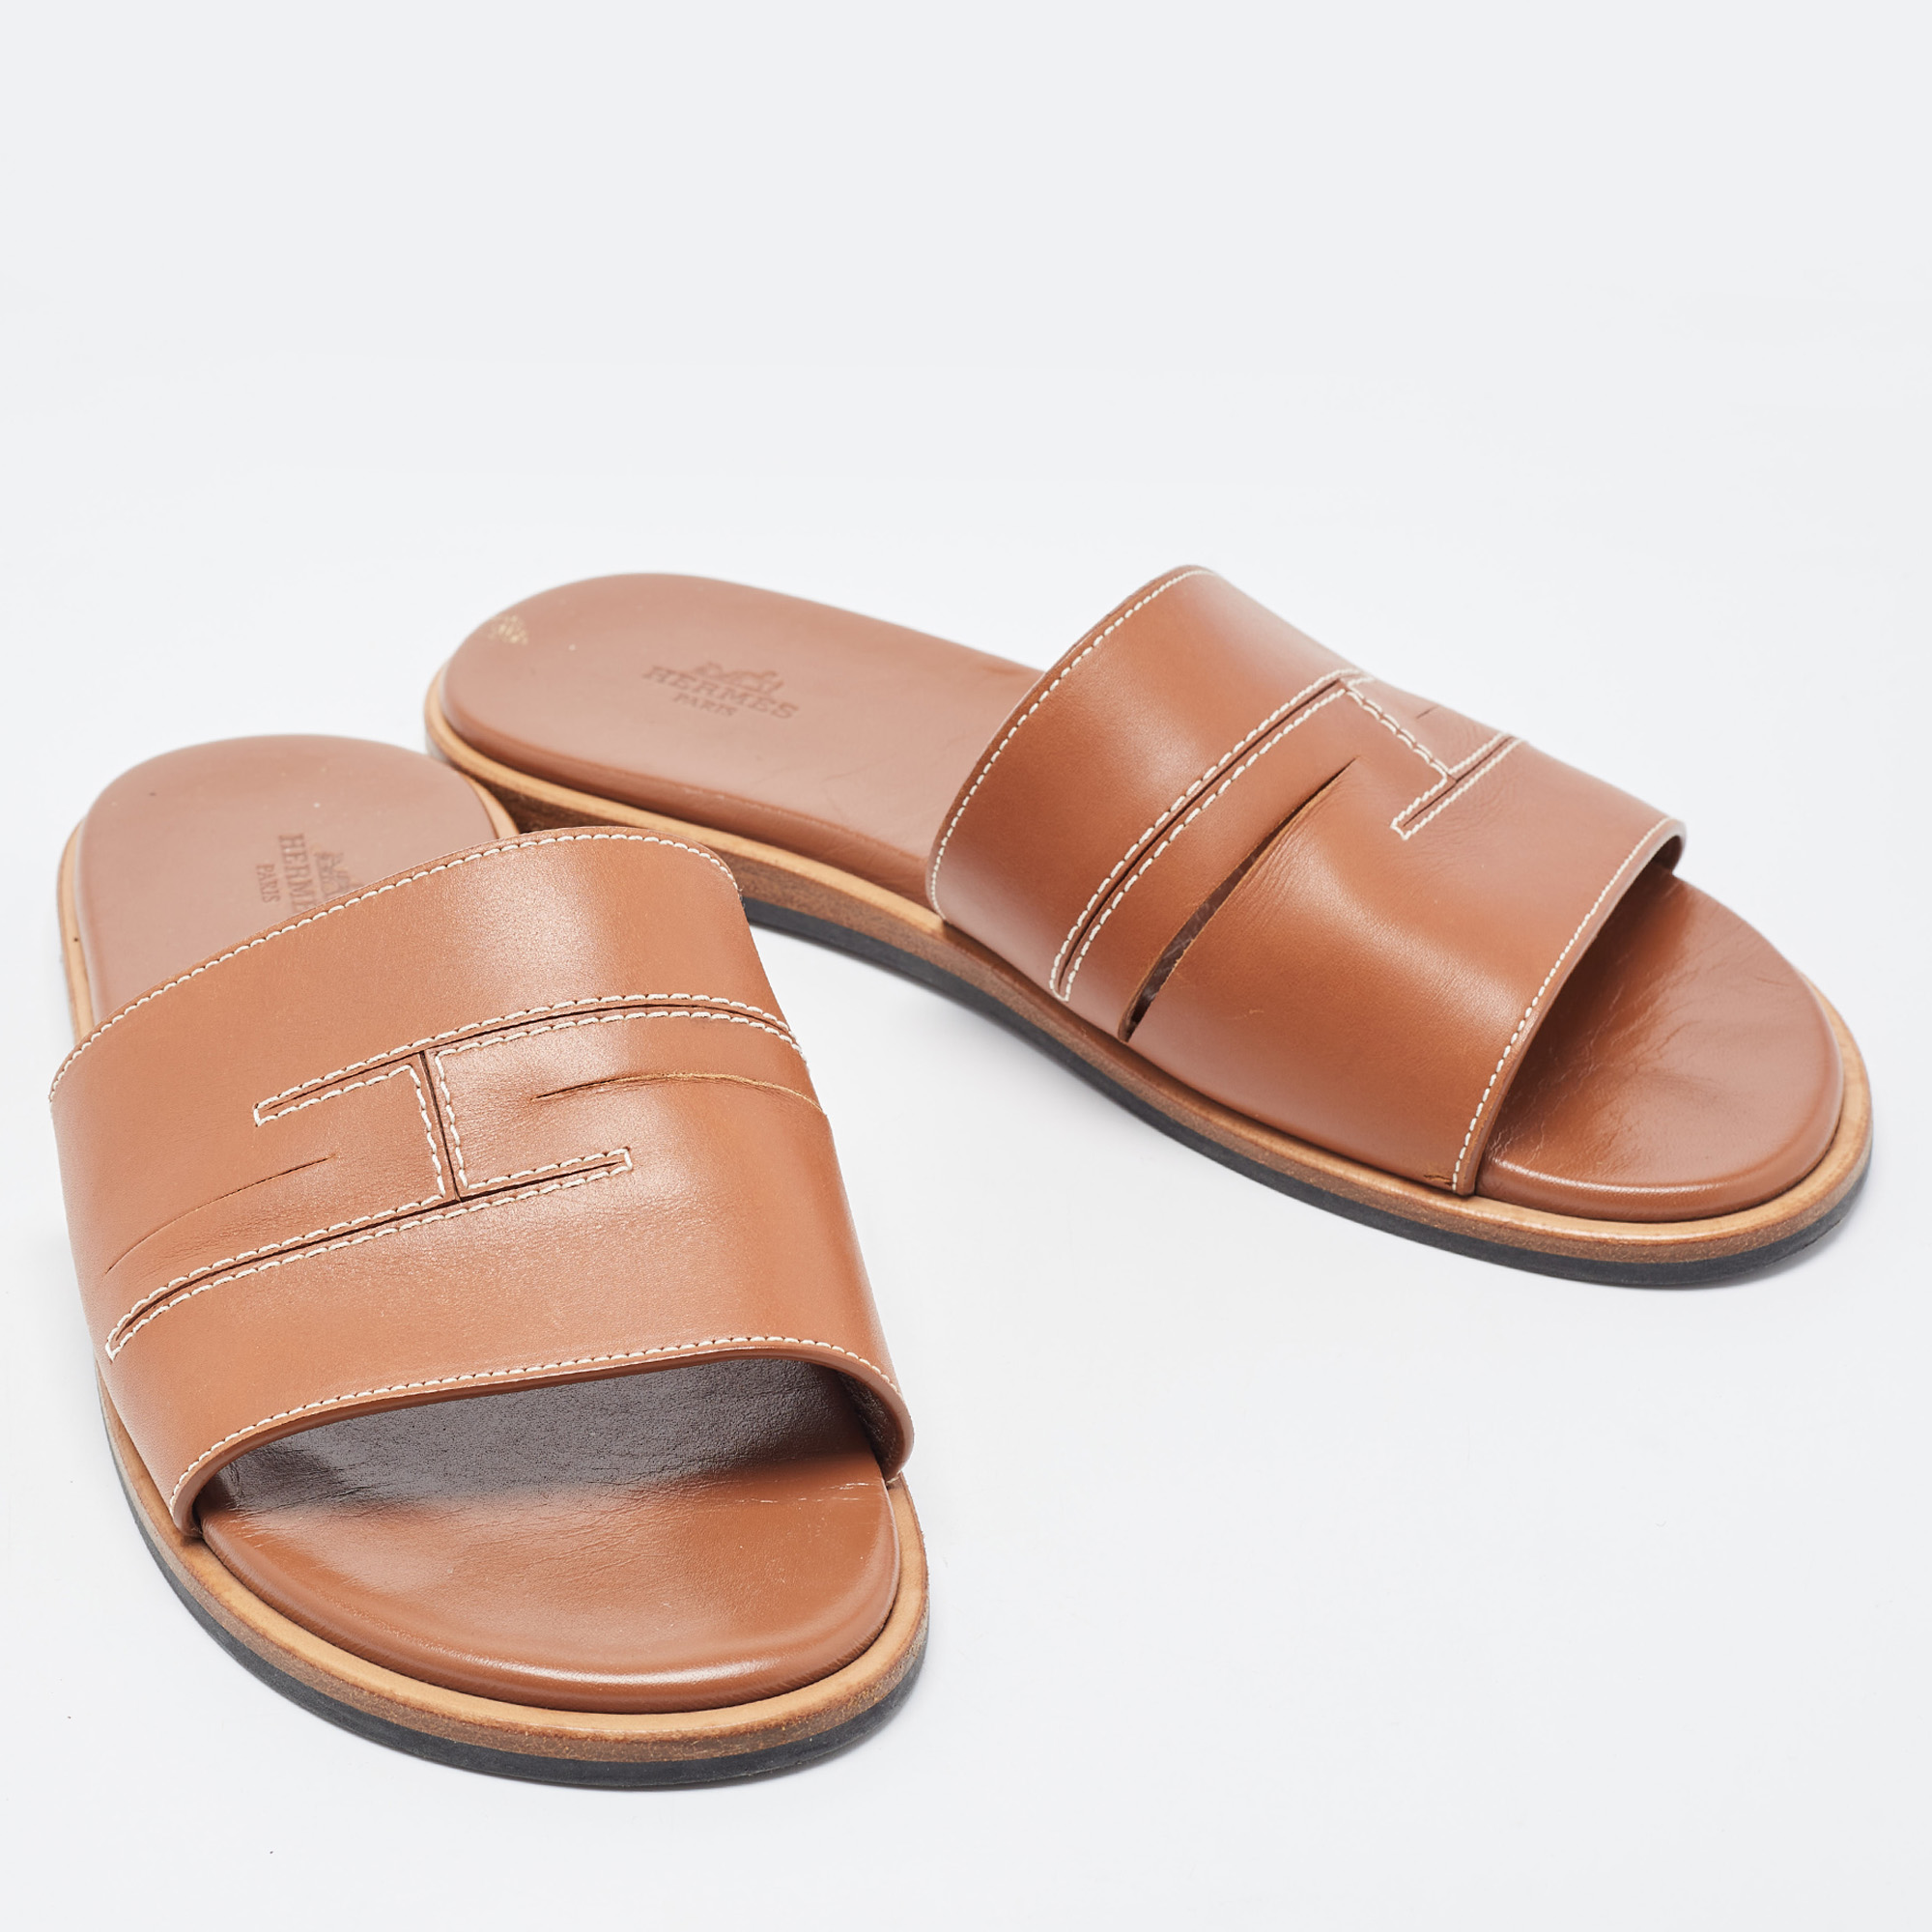 Hermes Tan Leather Slides Size 41